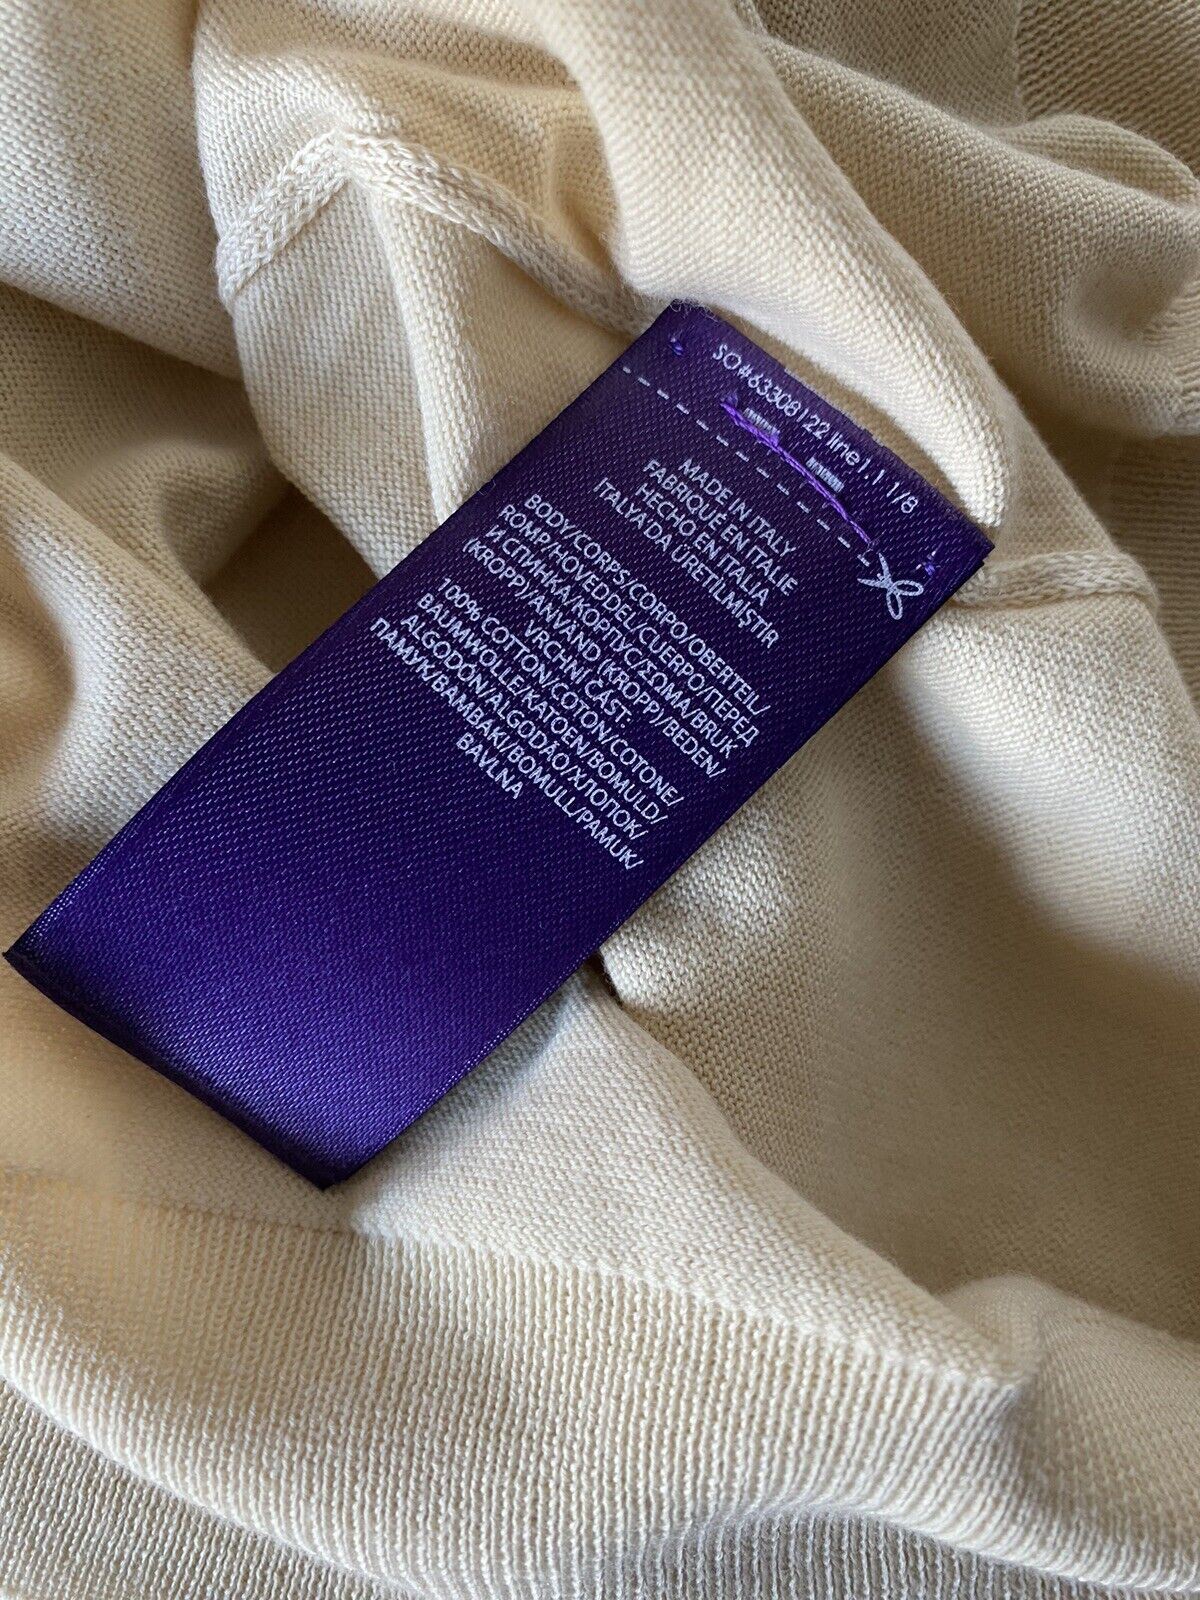 Neu mit Etikett: 695 $ Polo Ralph Lauren Purple Label Herren-Pullover aus Baumwolle in Creme, Größe L, Italien